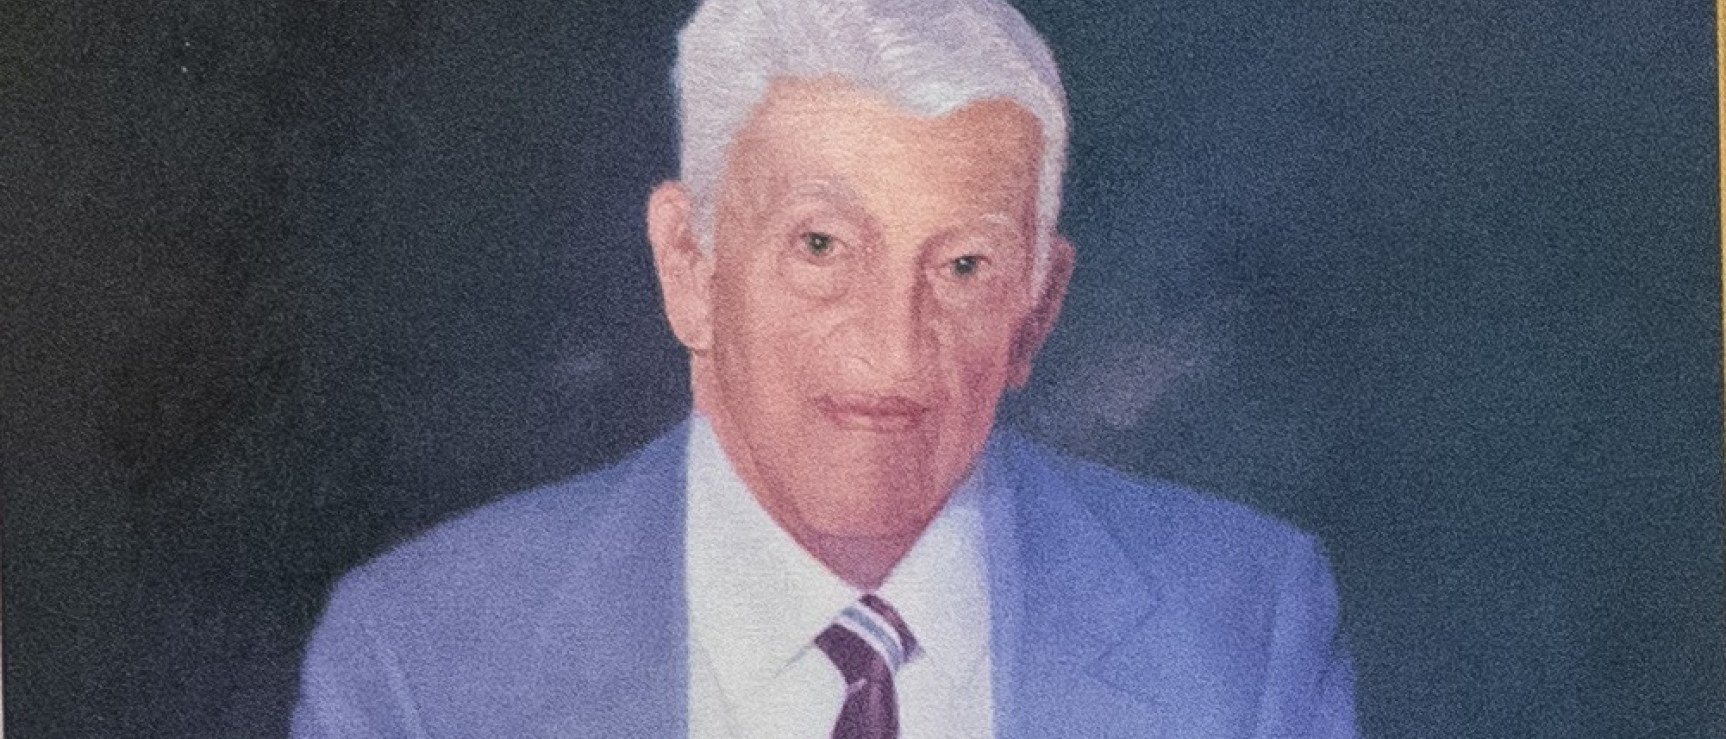 José Antonio León Rey